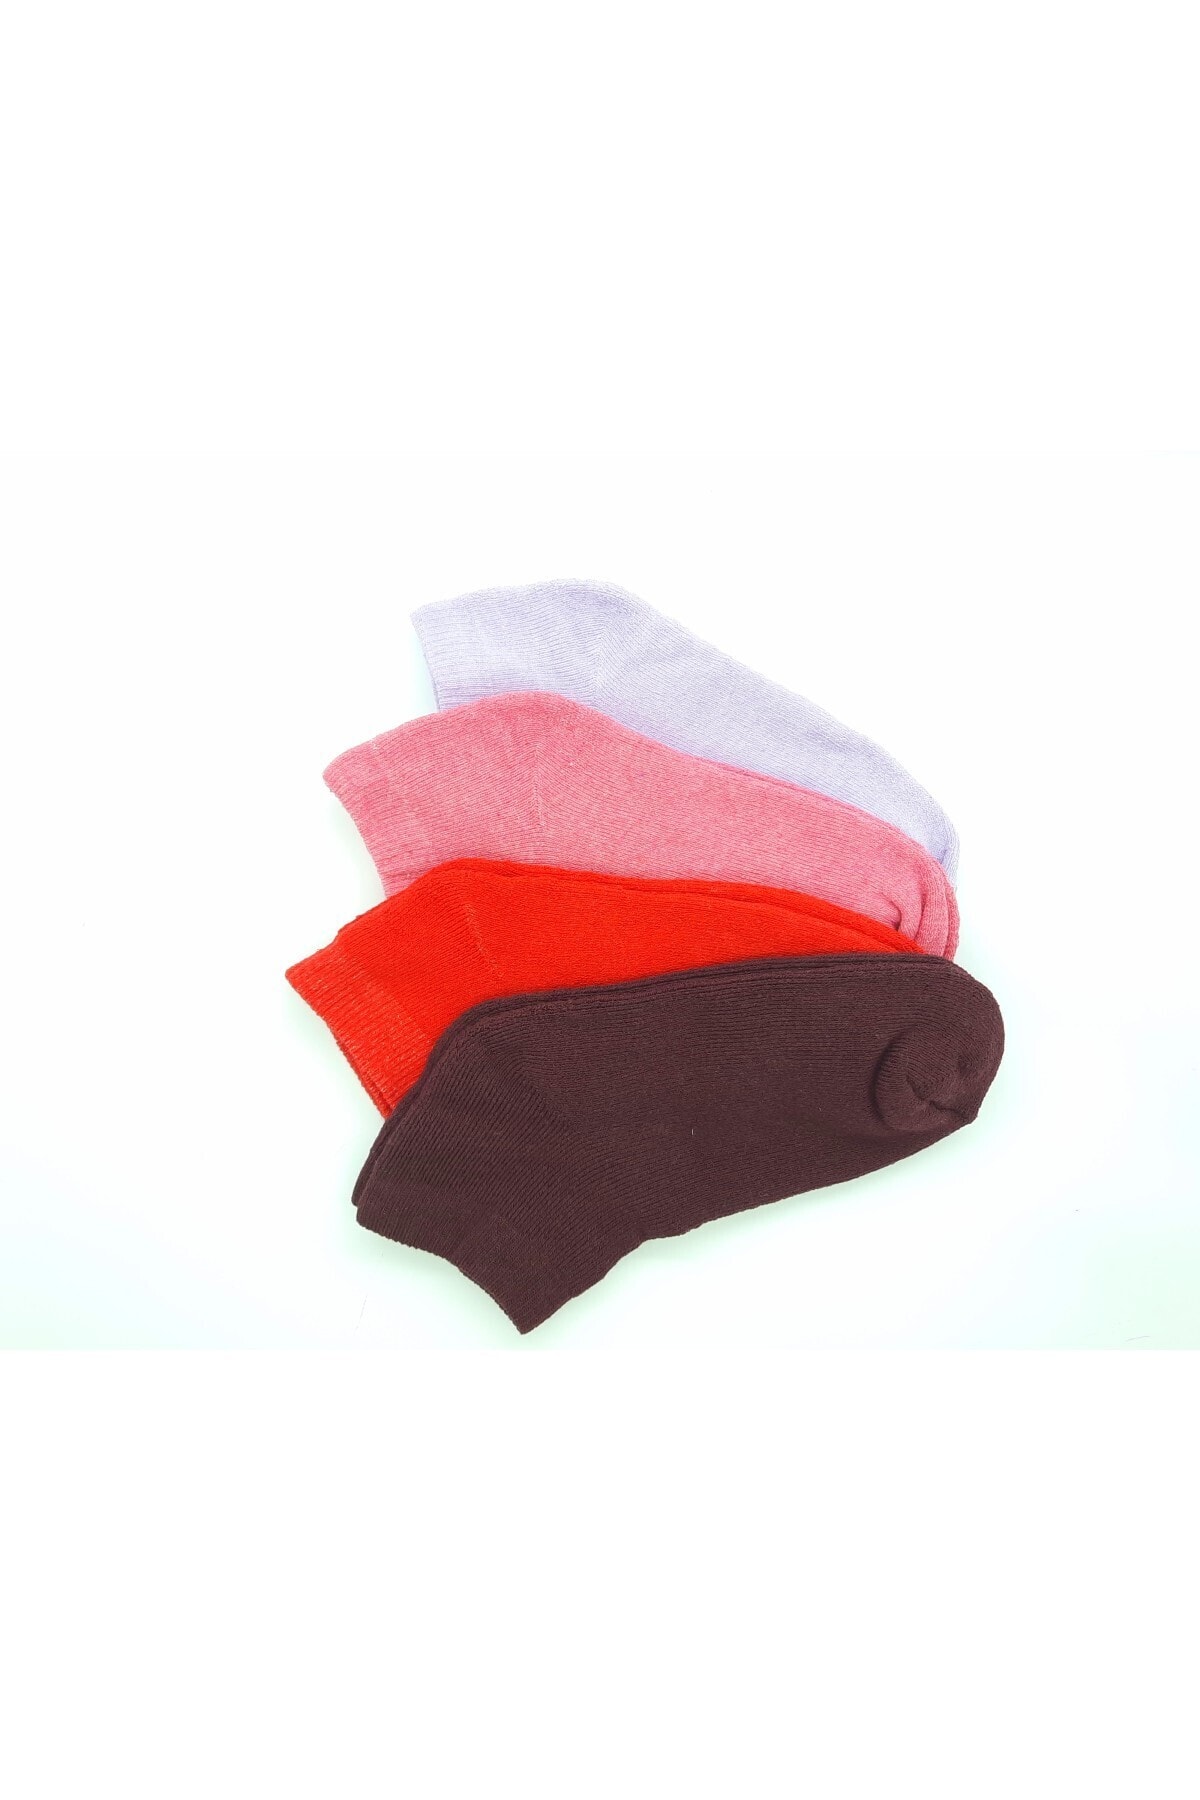 Black Arden Socks Renkli Desensiz Havlu Kadın Patik 4'lü 36-40 NE8859